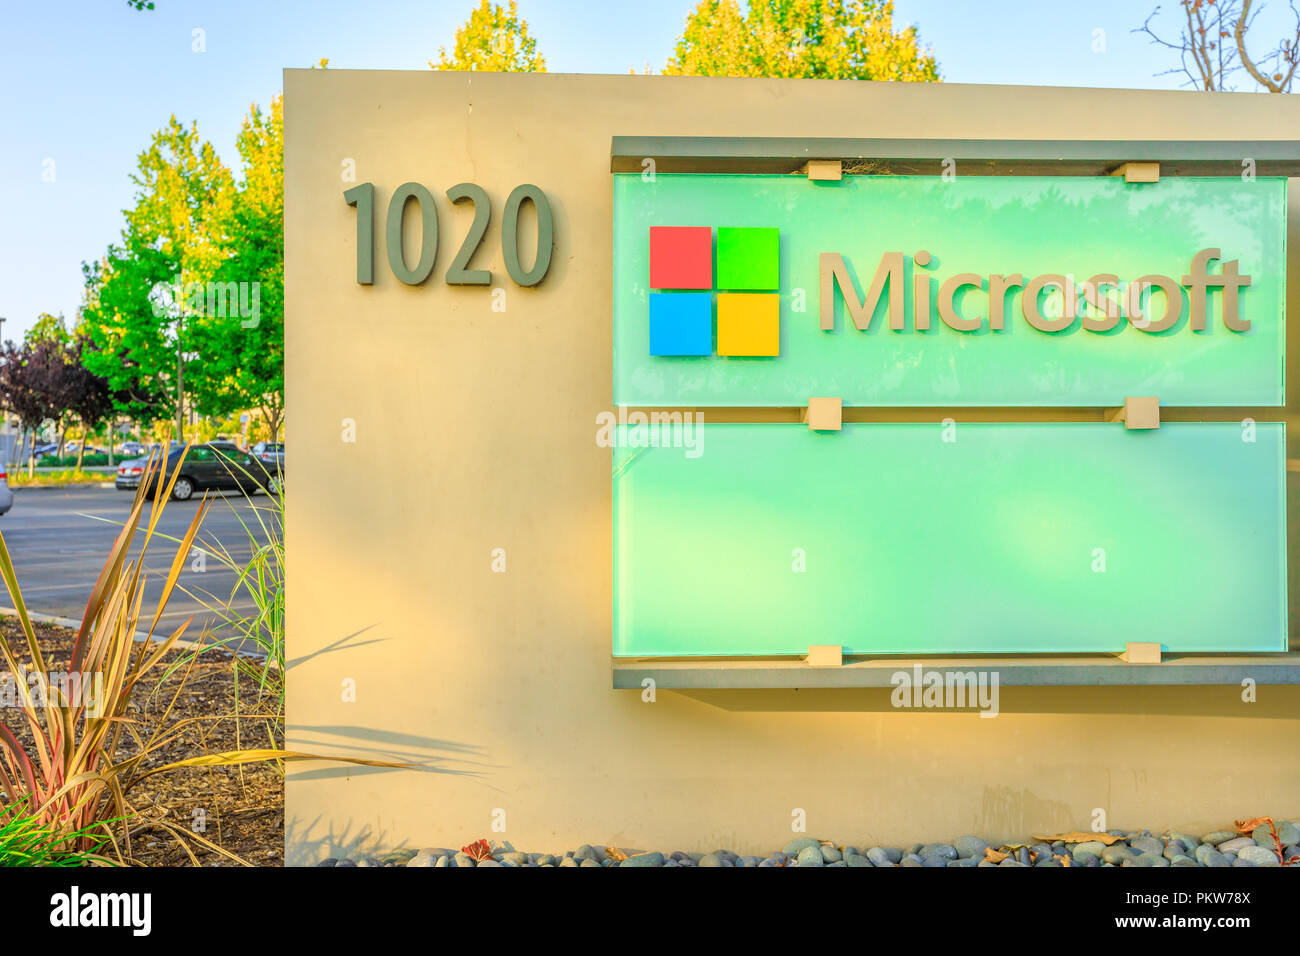 Sunnyvale, Kalifornien, USA - 13. August 2018: Nahaufnahme der Microsoft Corporation unterzeichnen auf 1020 Enterprise, Silicon Valley. Microsoft ist der größte Softwarehaus für PC-Betriebssystem und Office Anwendungen. Stockfoto